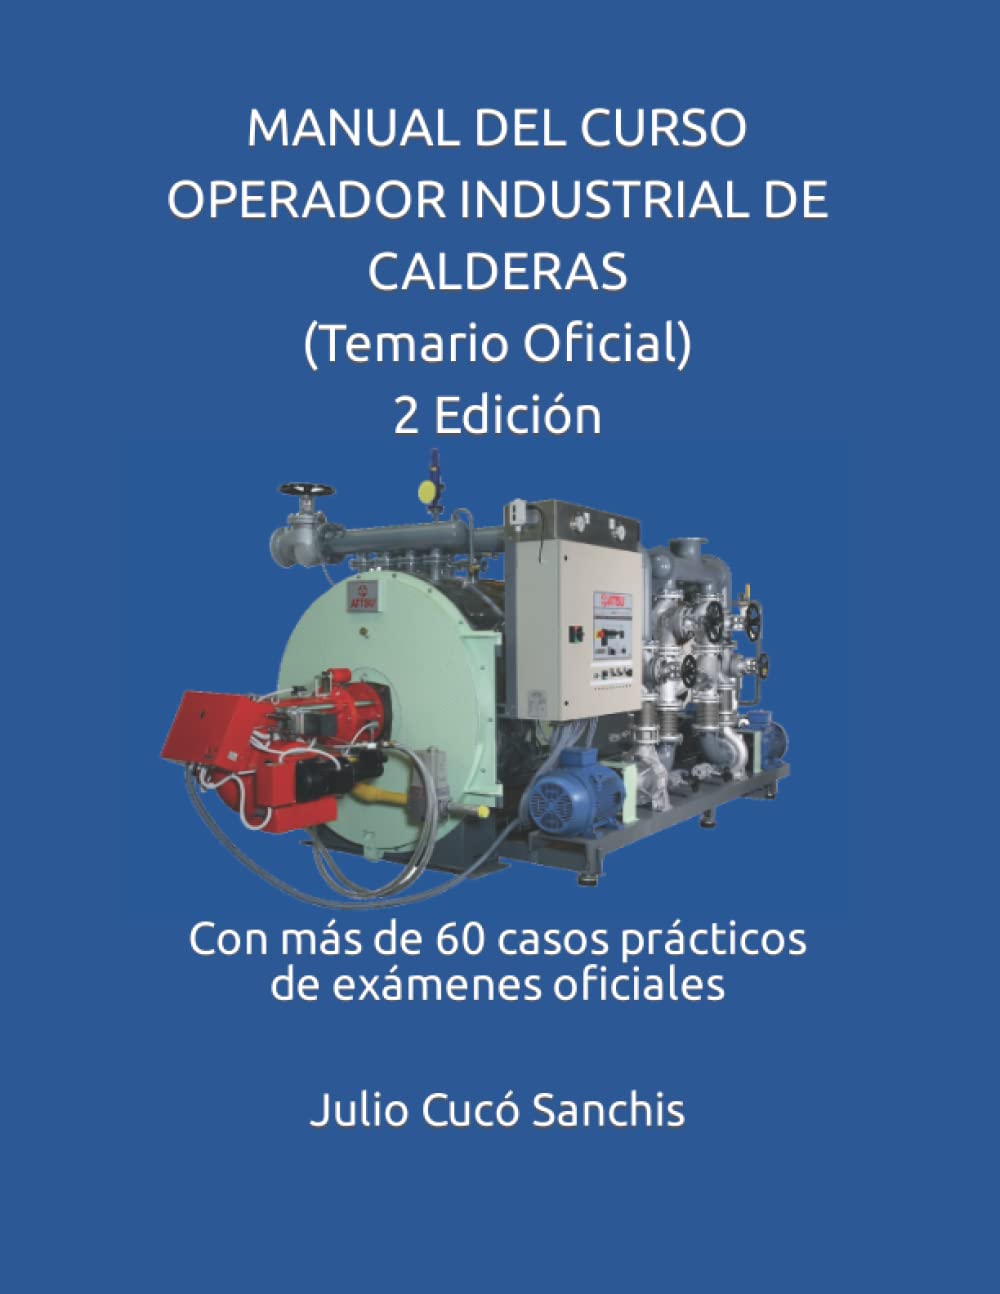 Manual del curso operador industrial de calderas